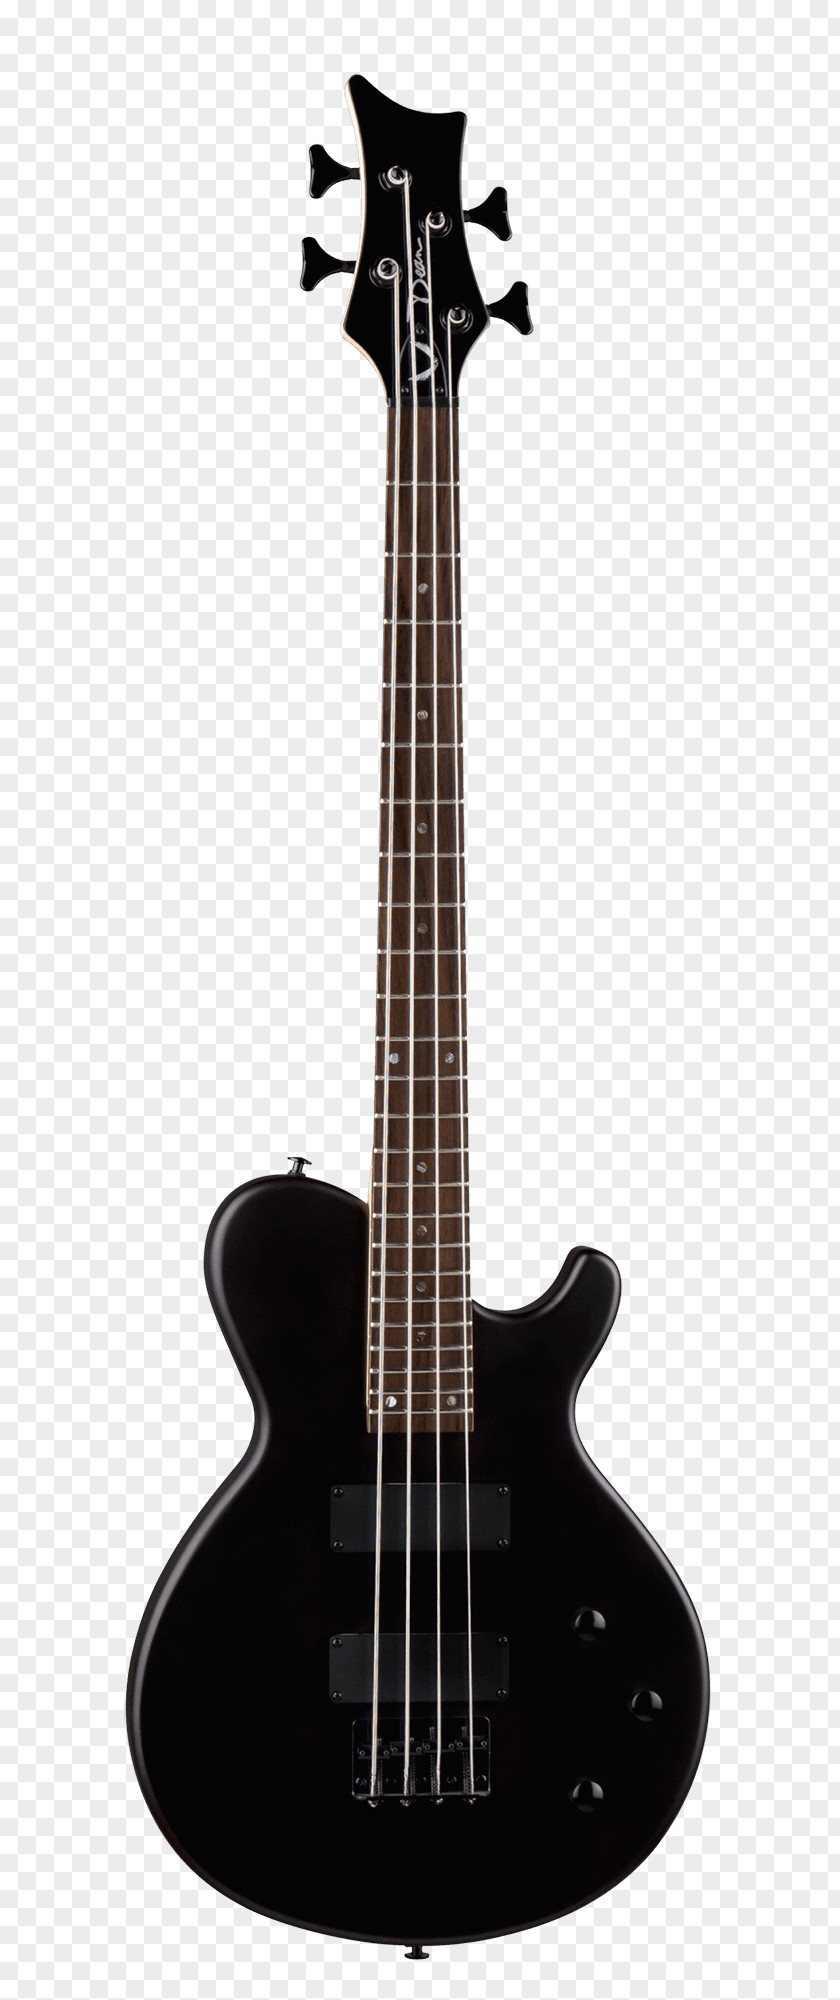 Bass Guitar Electric PRS Guitars Yamaha Corporation PNG